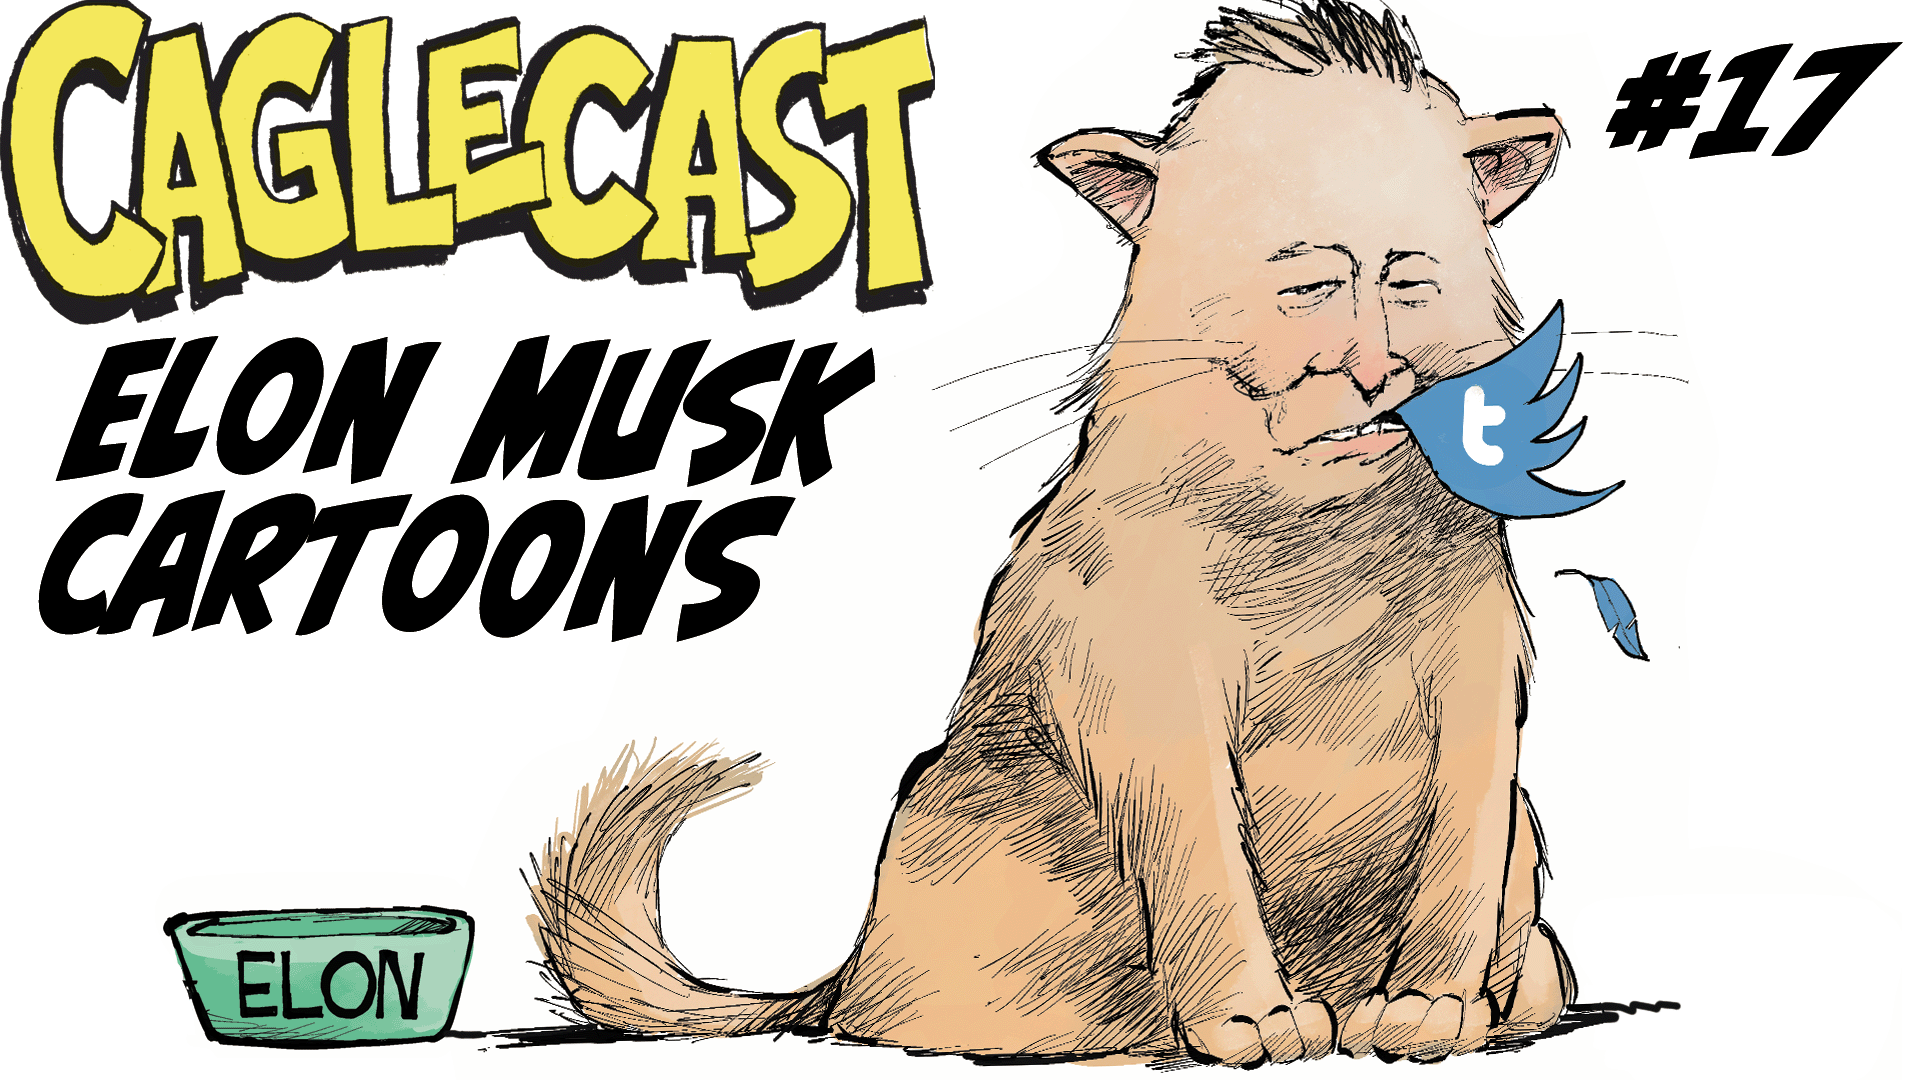 Elon Musk Cartoons #17 poster